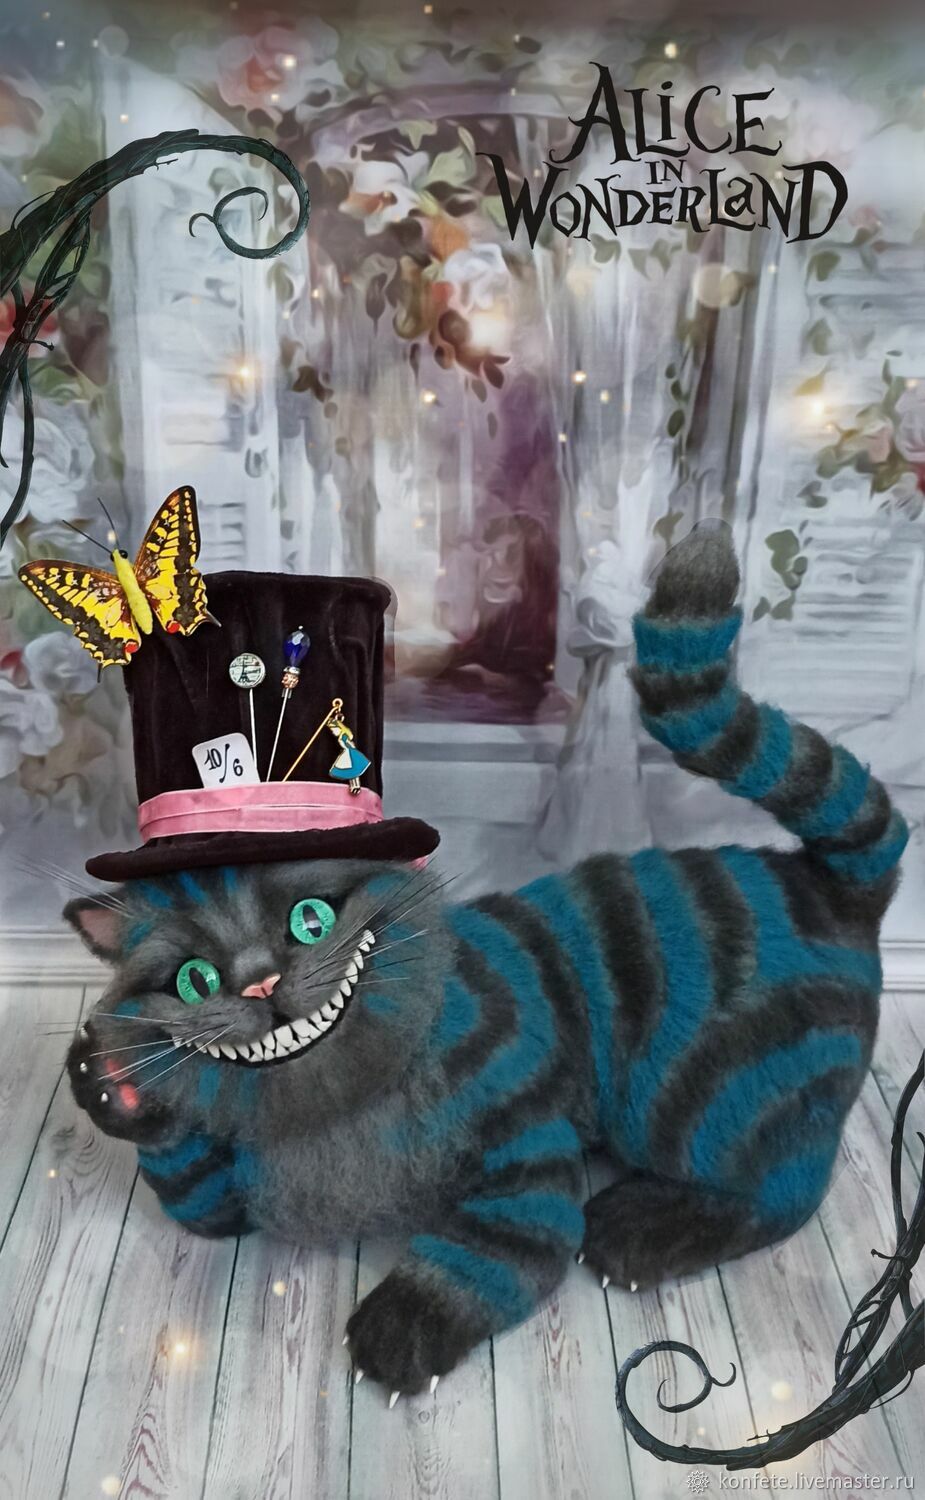 Образ на Хэллоуин чеширский кот. Особенности макияжа Чеширского кота на Хэллоуин